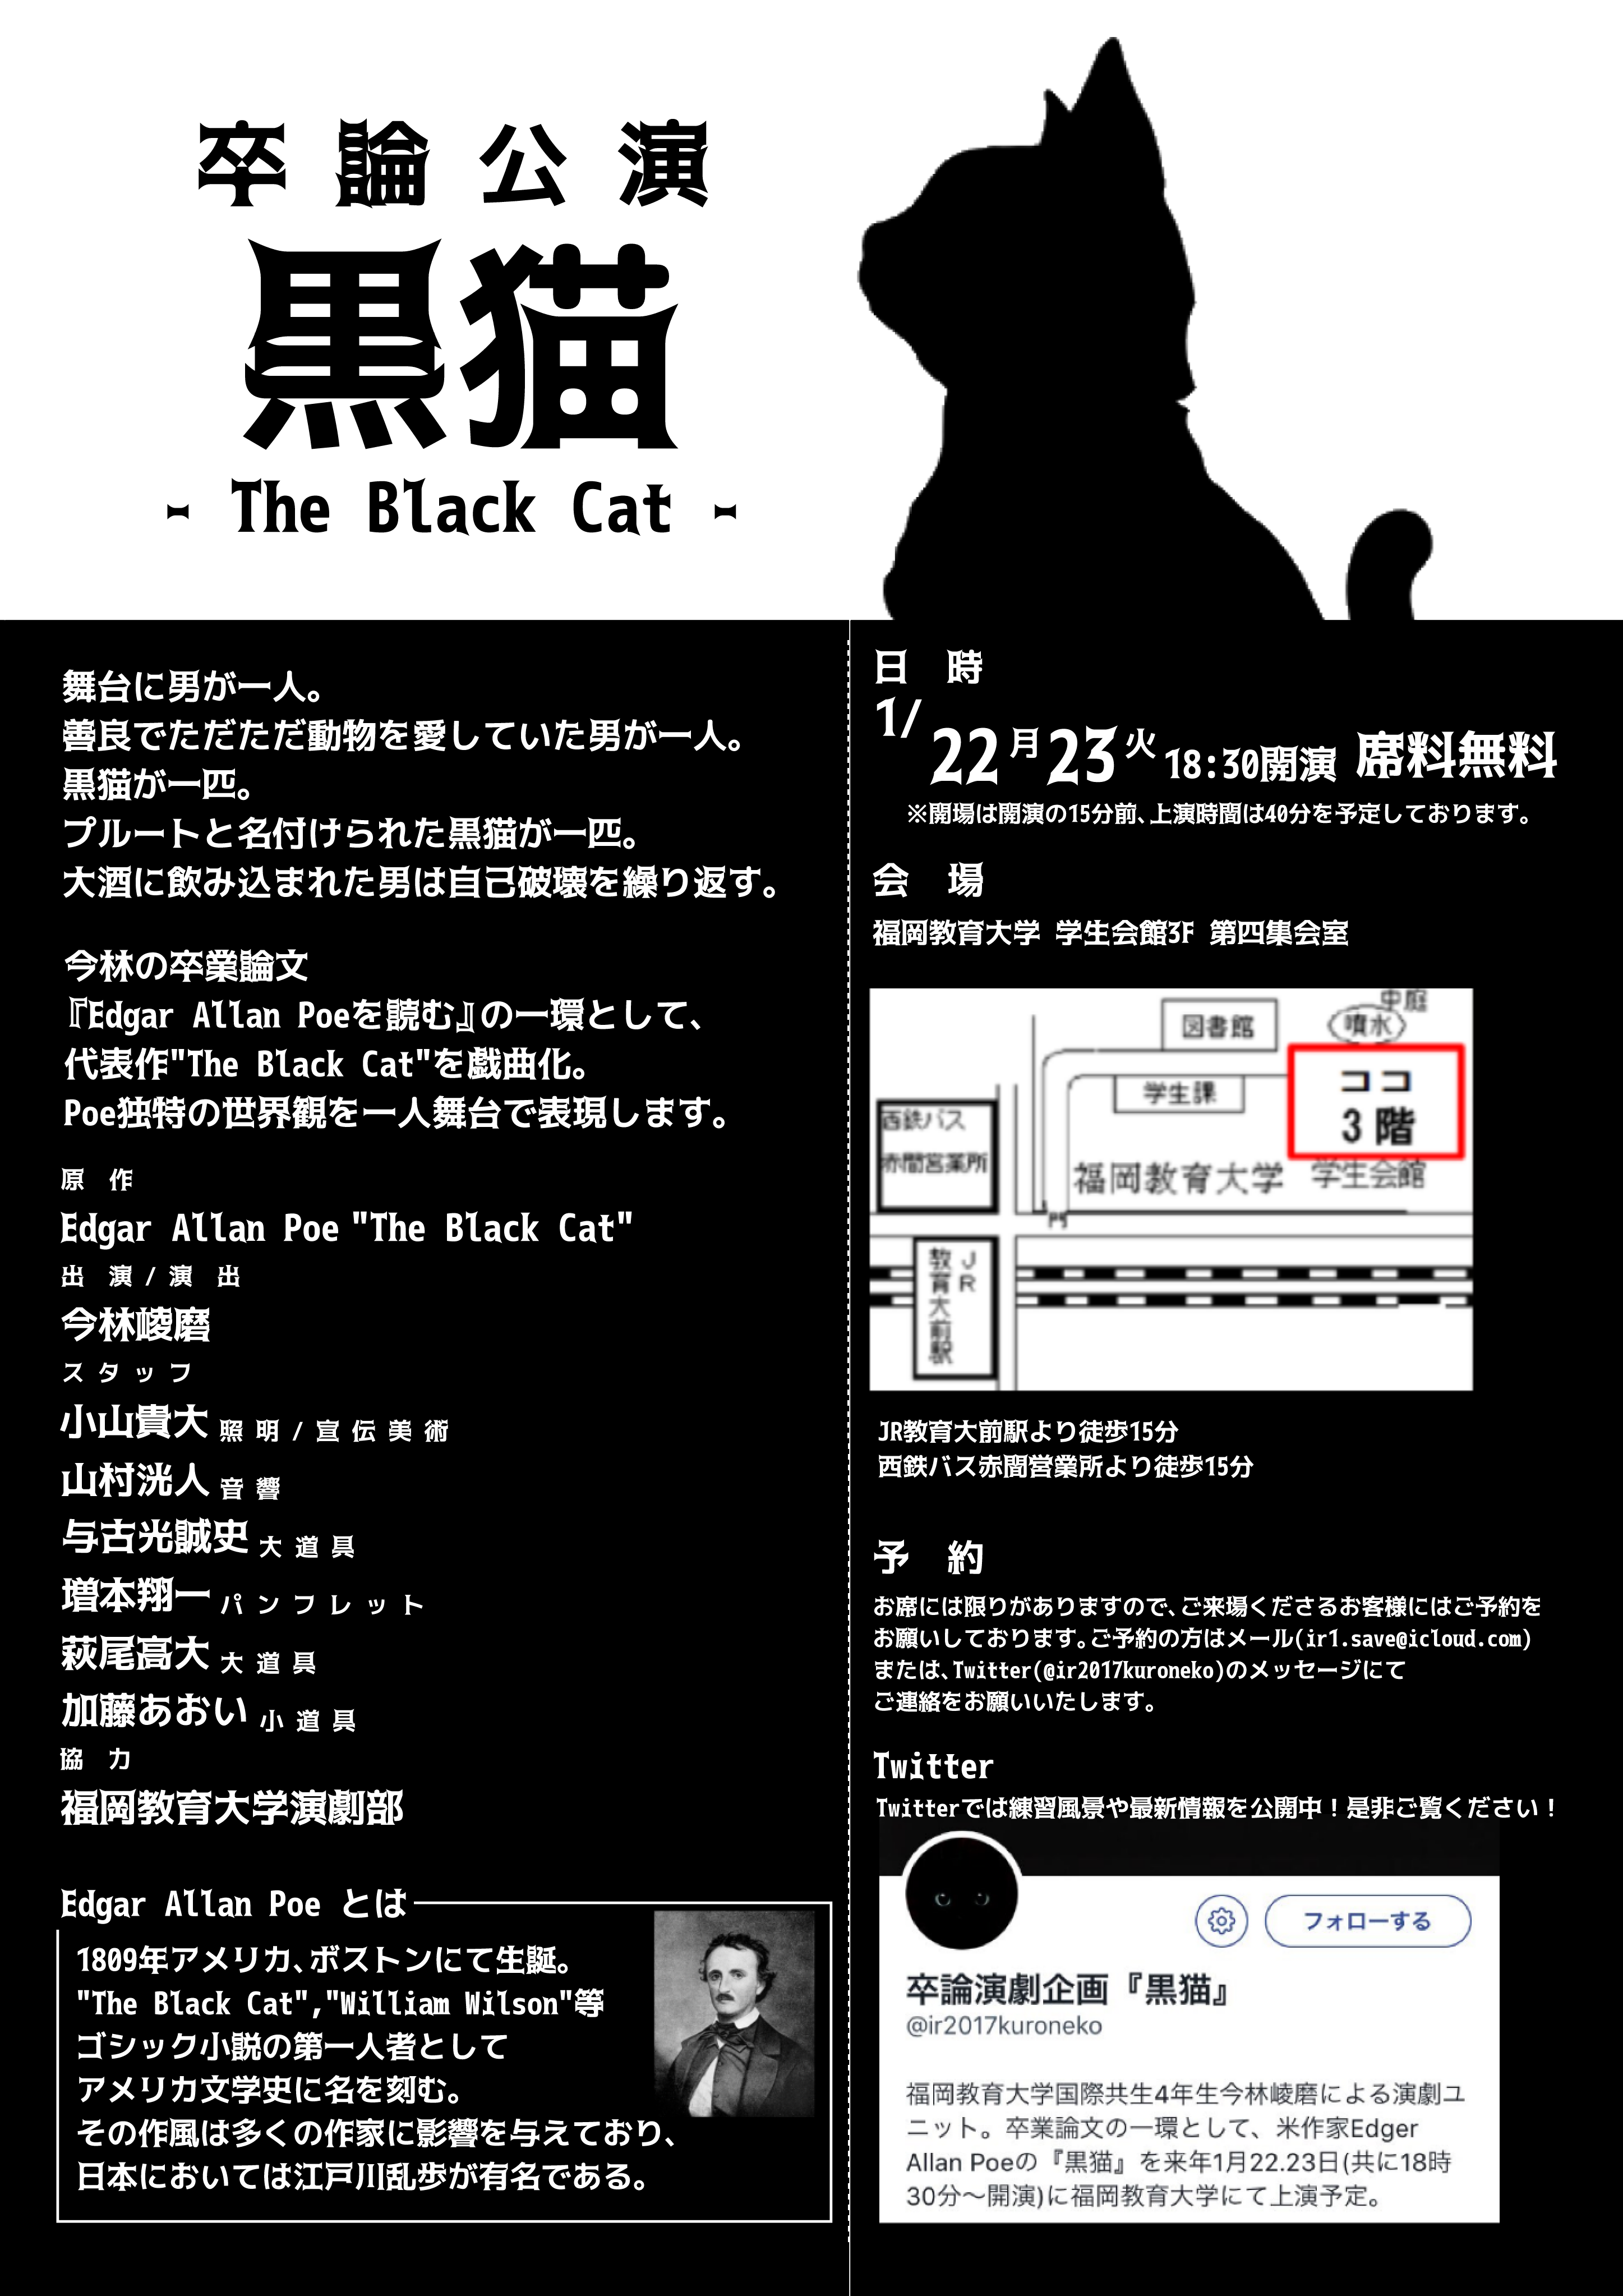 福岡教育大学演劇部ブログ 公演情報 卒論公演についてのお知らせ